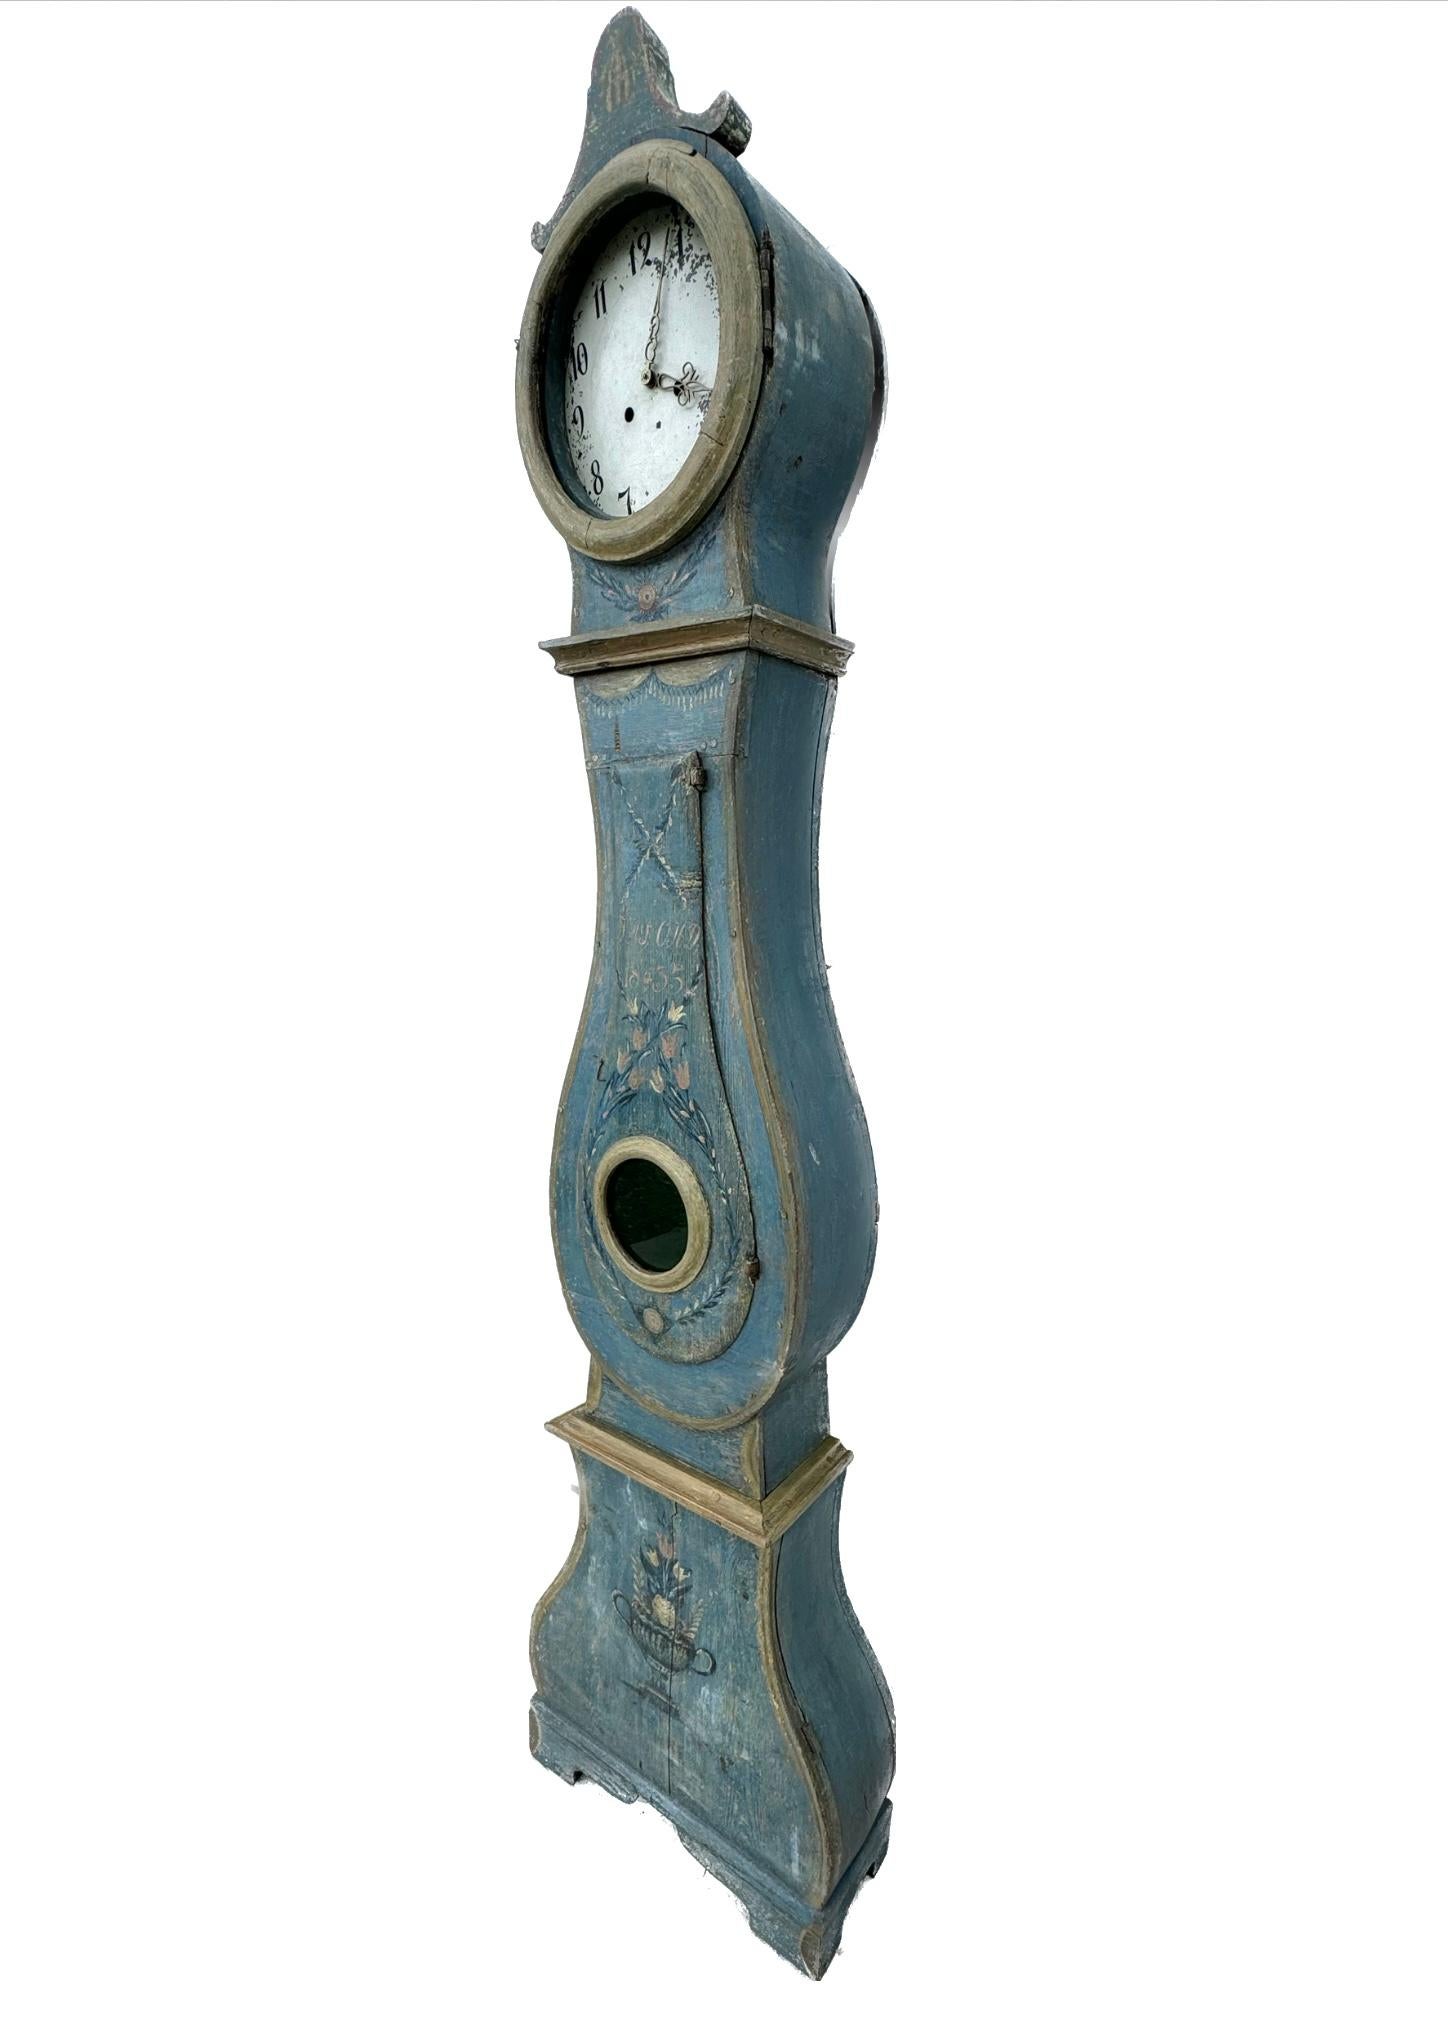 Schwedische Gustavianische Standuhr aus dem 19. Jahrhundert mit einem eleganten und schlanken Holzgehäuse mit dekorativen Details. Abgekratzt, um die ursprüngliche Polychromed gemalt und handgefertigte Uhr ist himmelblau mit floralen Motiven in der